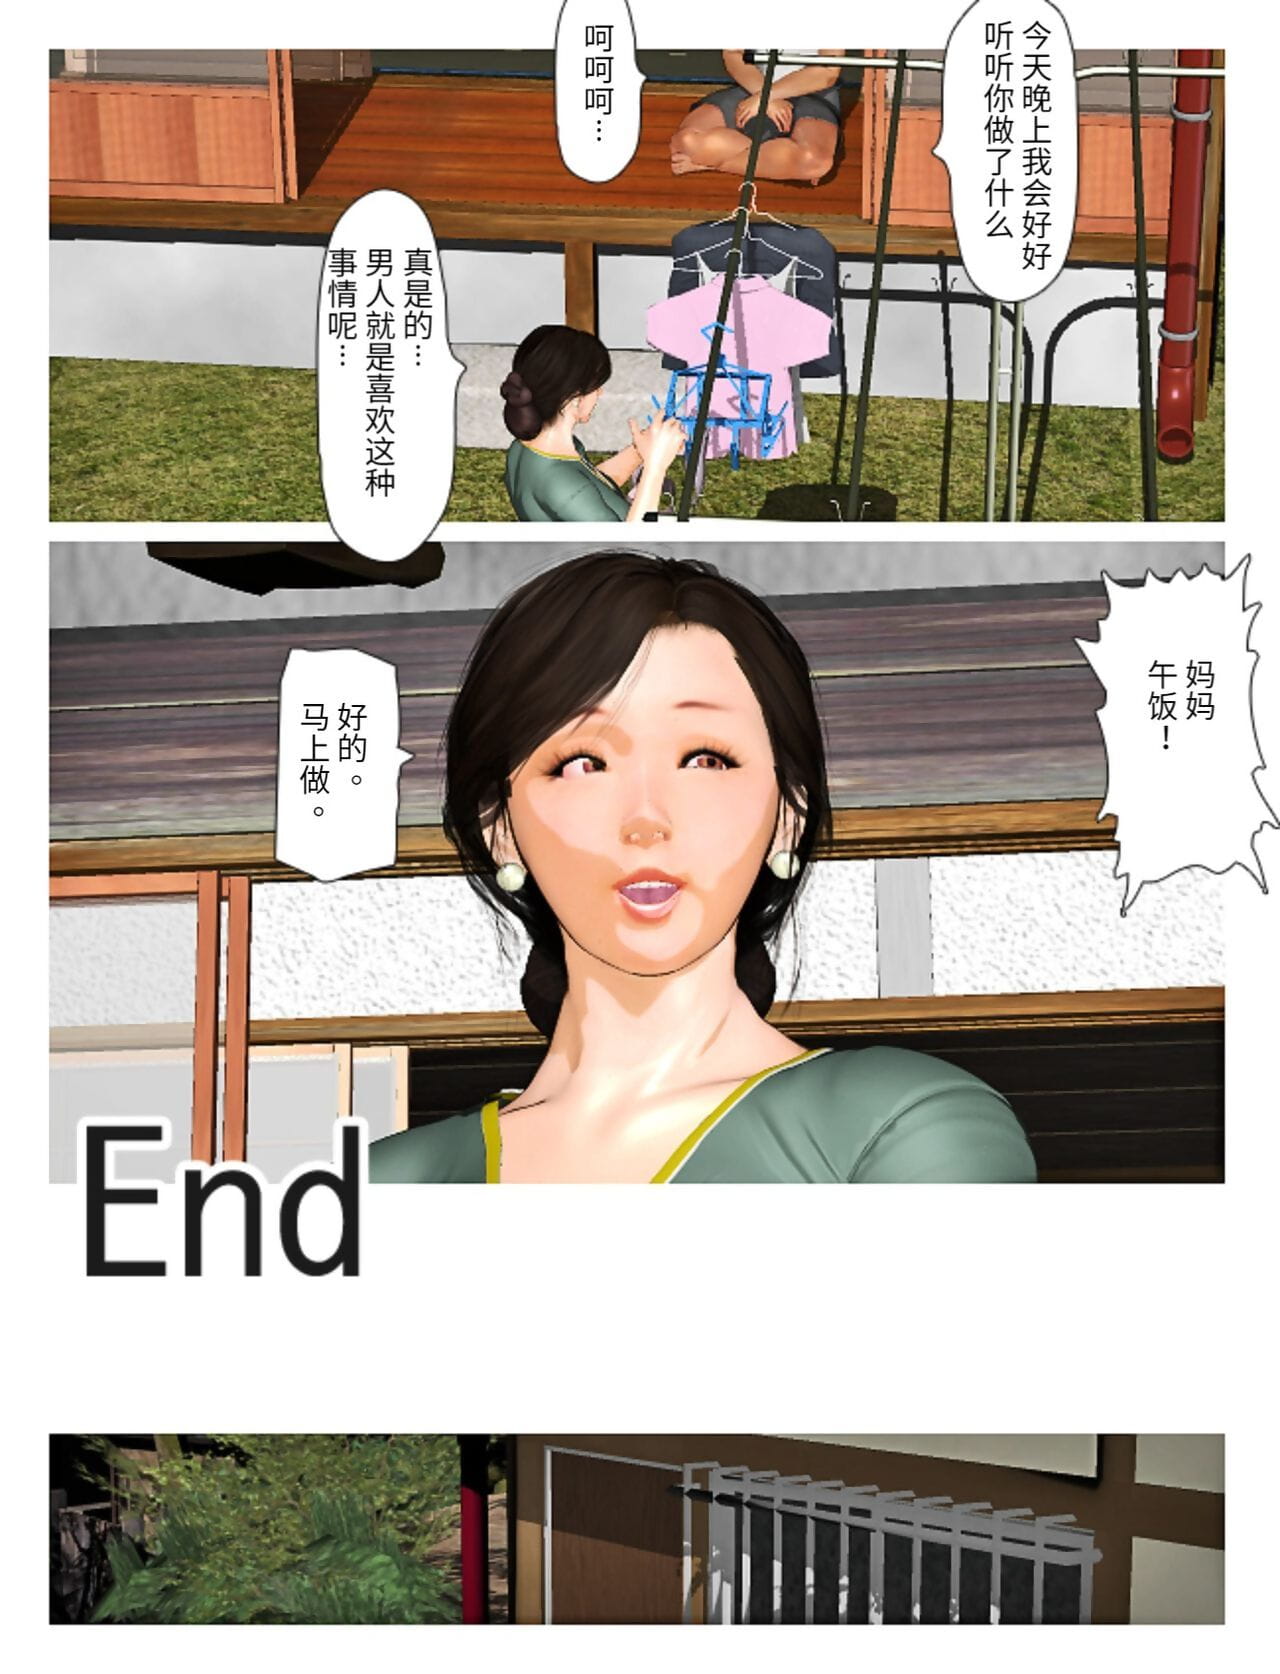 Kyou keine misako san 2019:4 Teil 5 page 1